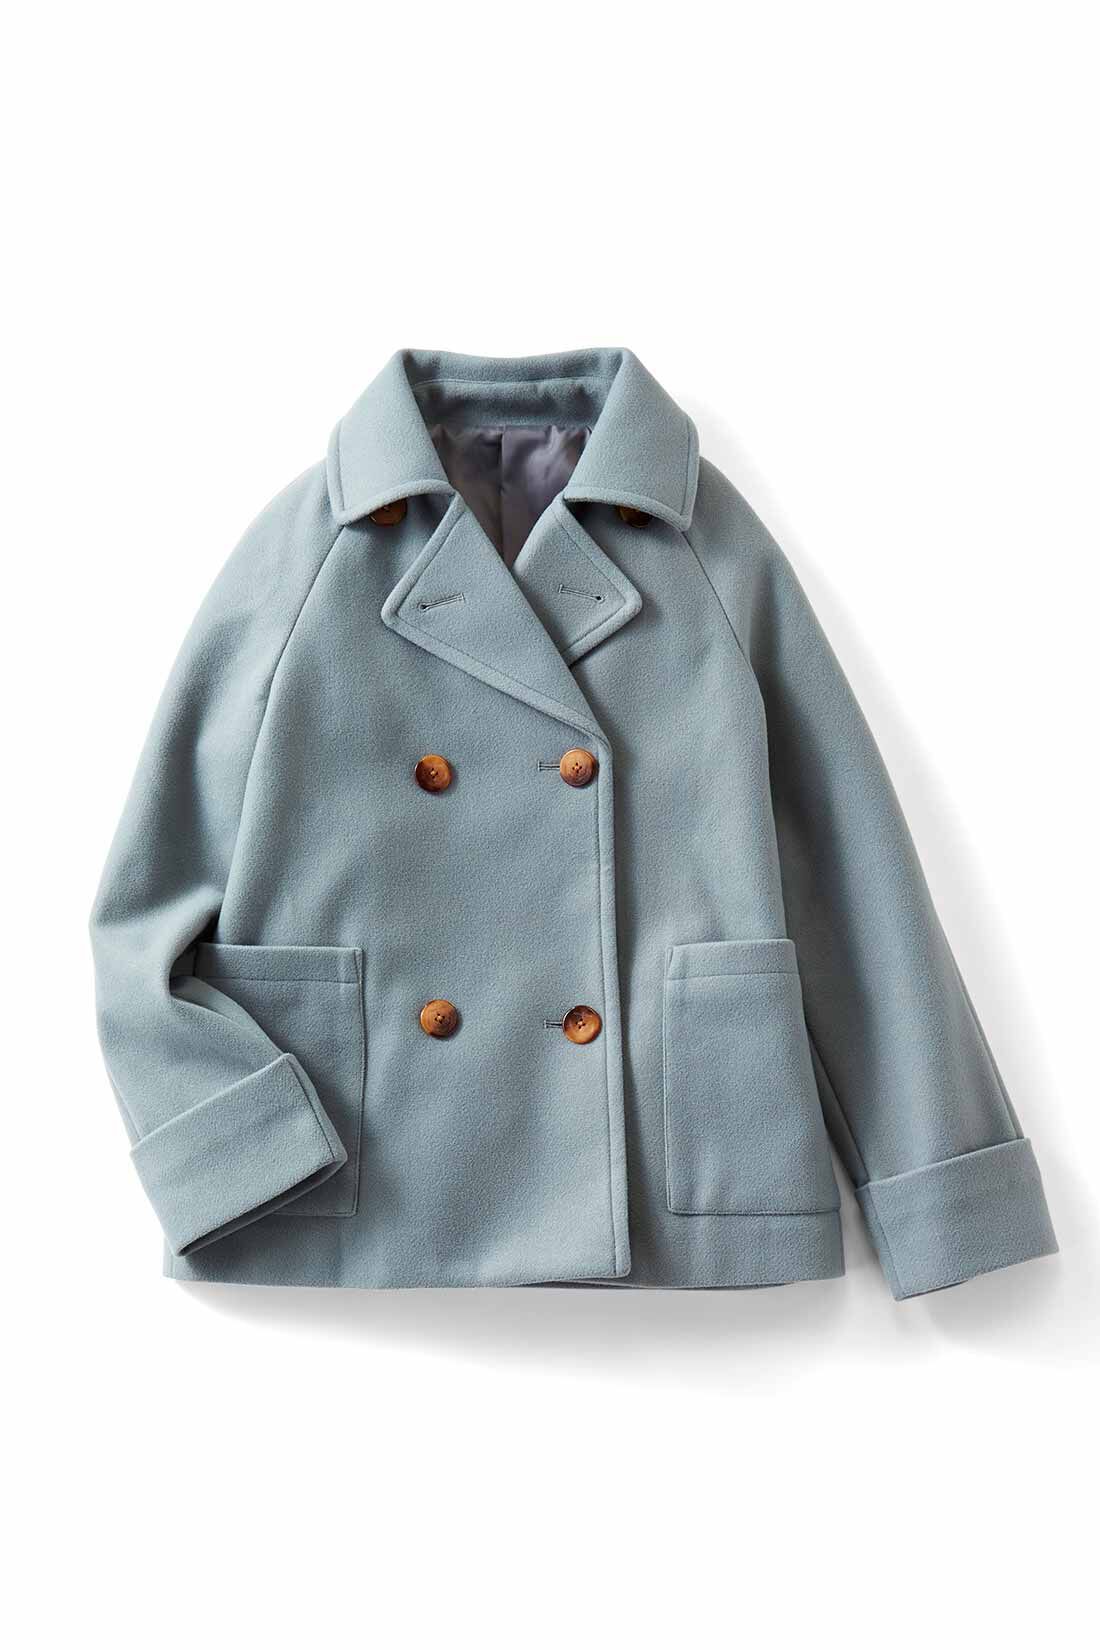 IEDIT|IEDIT[イディット]　着映えカラーのショート丈こなれPコート〈ロイヤルブルー〉|ブルーグリーン